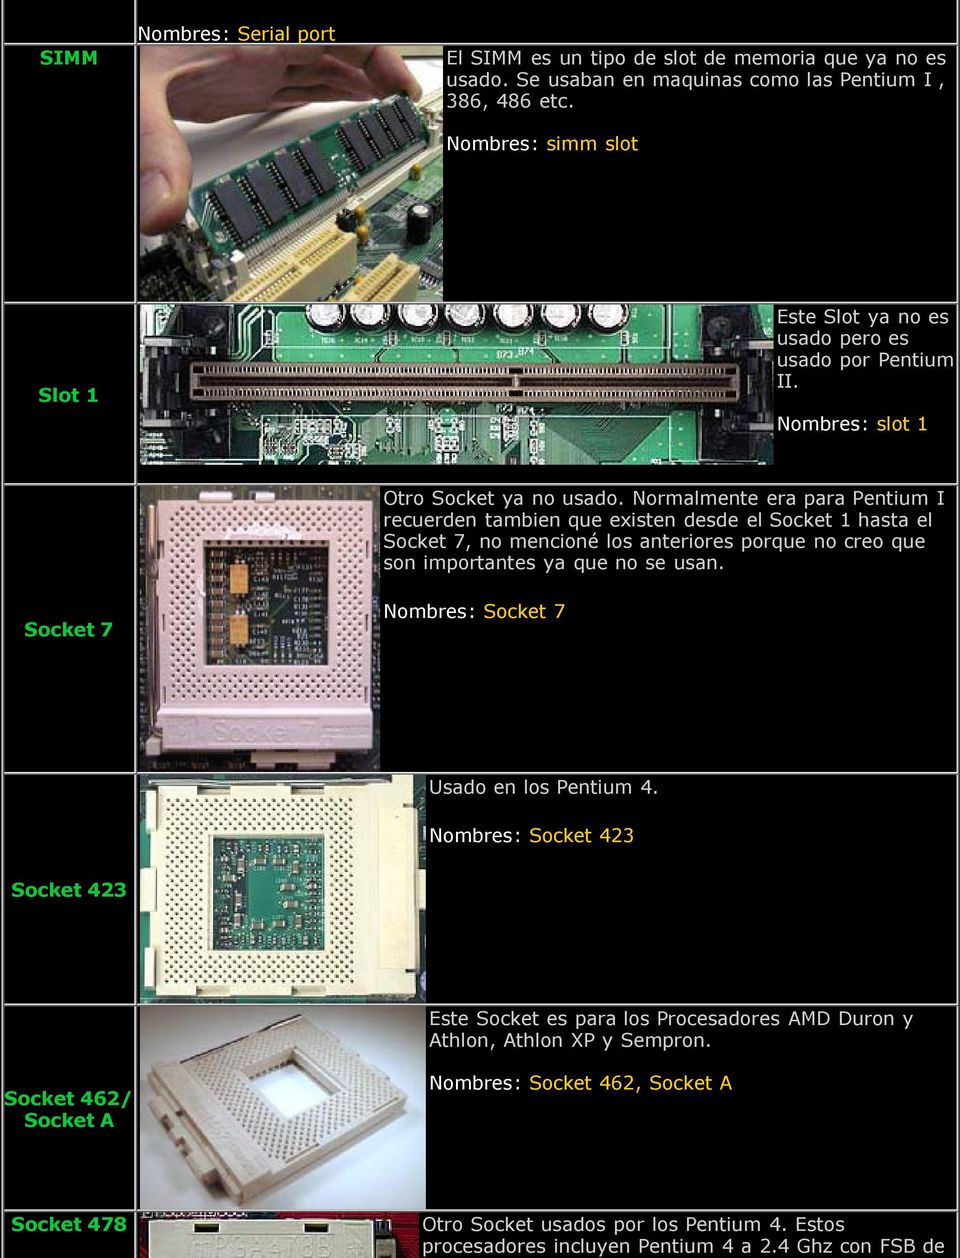 Normalmente era para Pentium I recuerden tambien que existen desde el Socket 1 hasta el Socket 7, no mencioné los anteriores porque no creo que son importantes ya que no se usan.